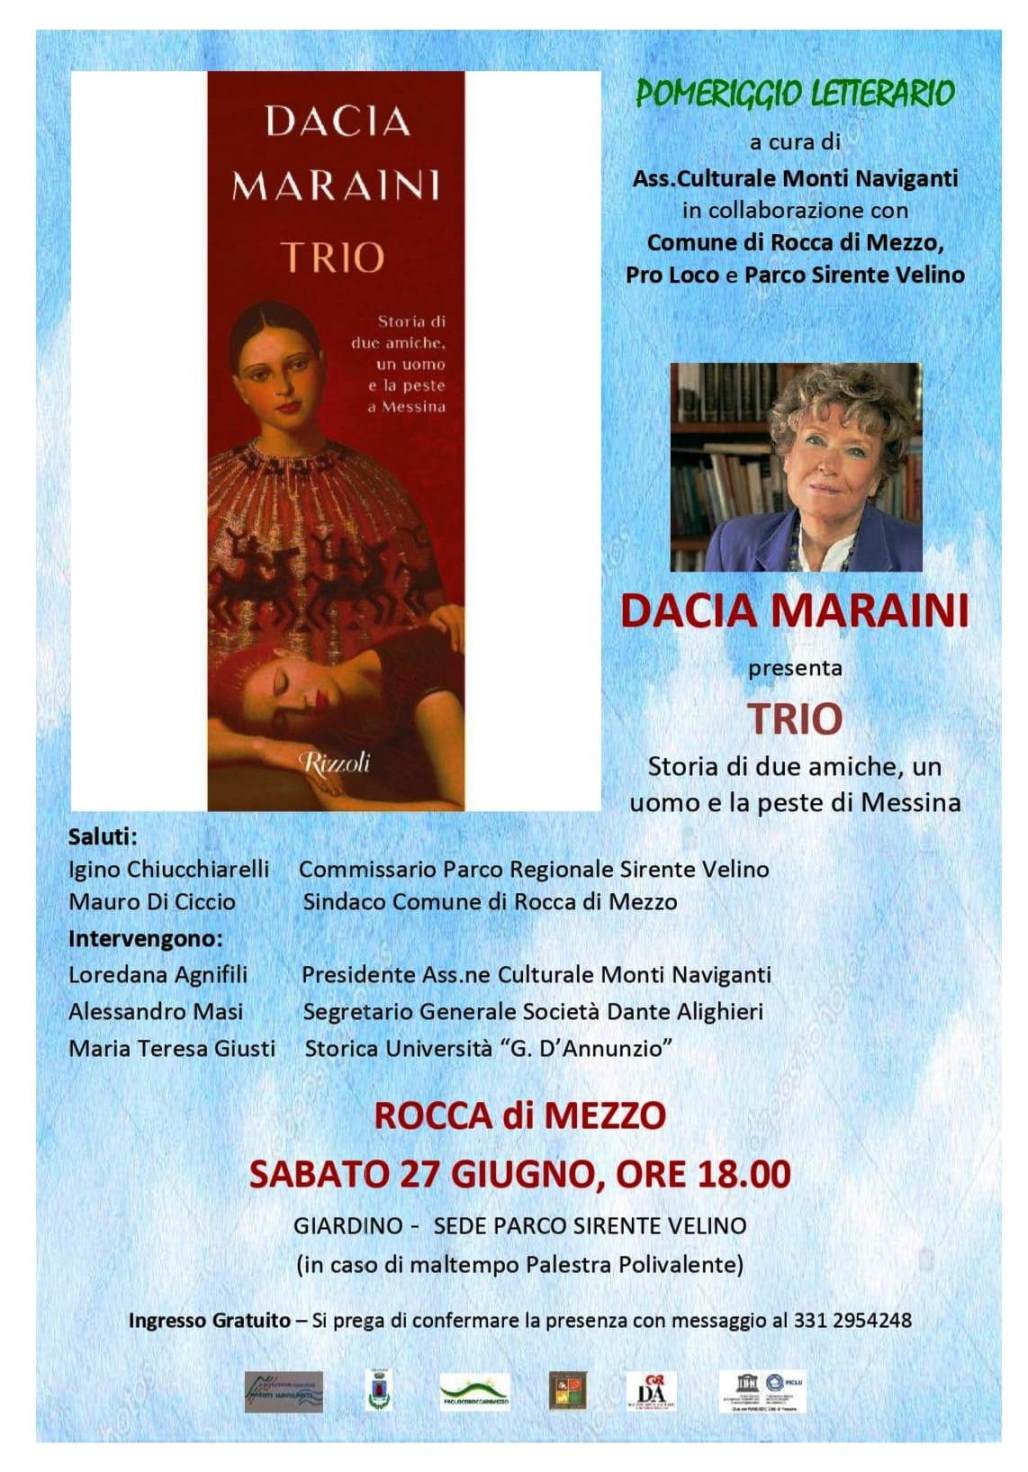 Pomeriggio letterario: incontro con Dacia Maraini